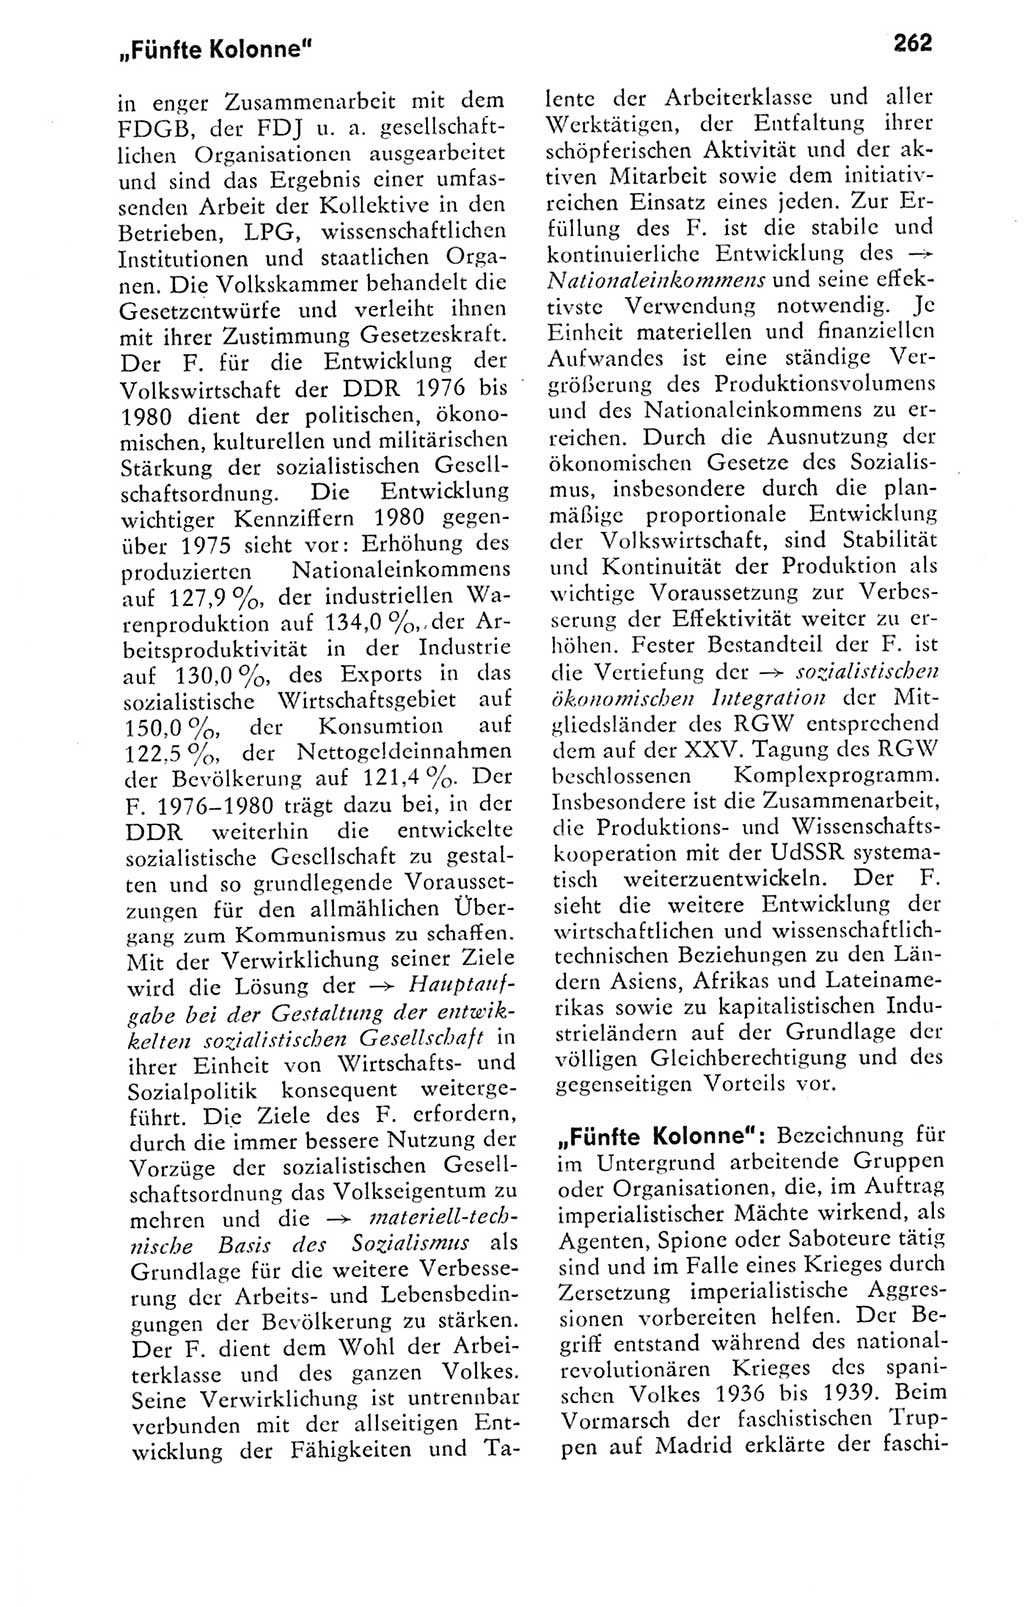 Kleines politisches Wörterbuch [Deutsche Demokratische Republik (DDR)] 1978, Seite 262 (Kl. pol. Wb. DDR 1978, S. 262)